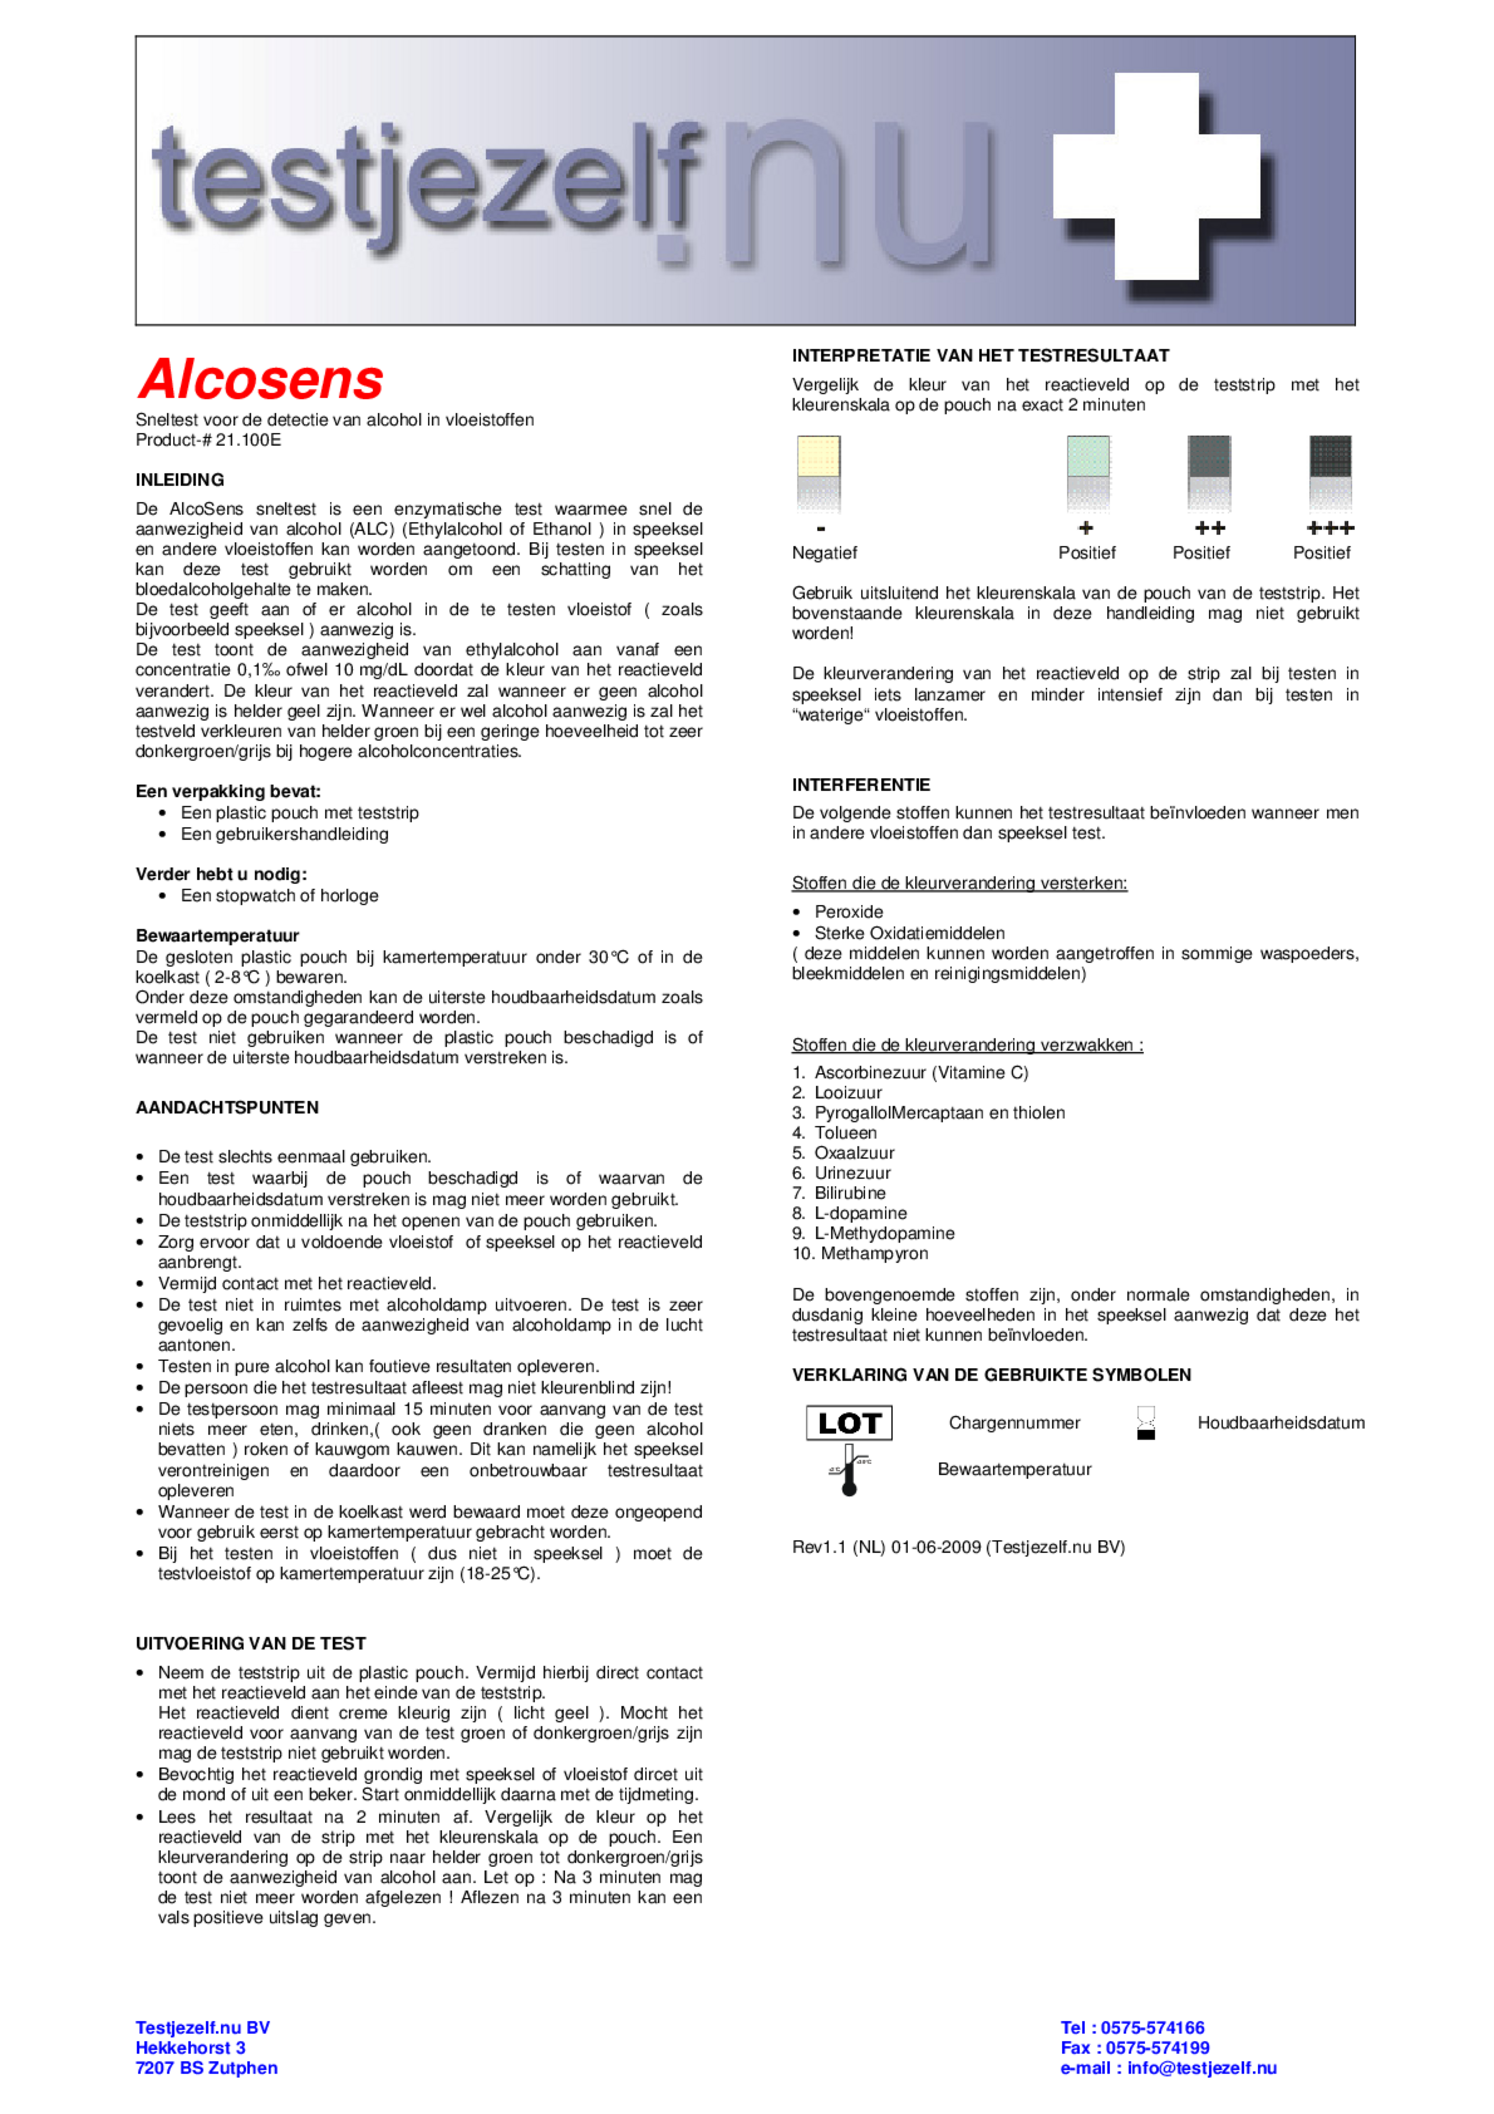 Alcosens Alcohol Speeksel Teststrips afbeelding van document #1, gebruiksaanwijzing